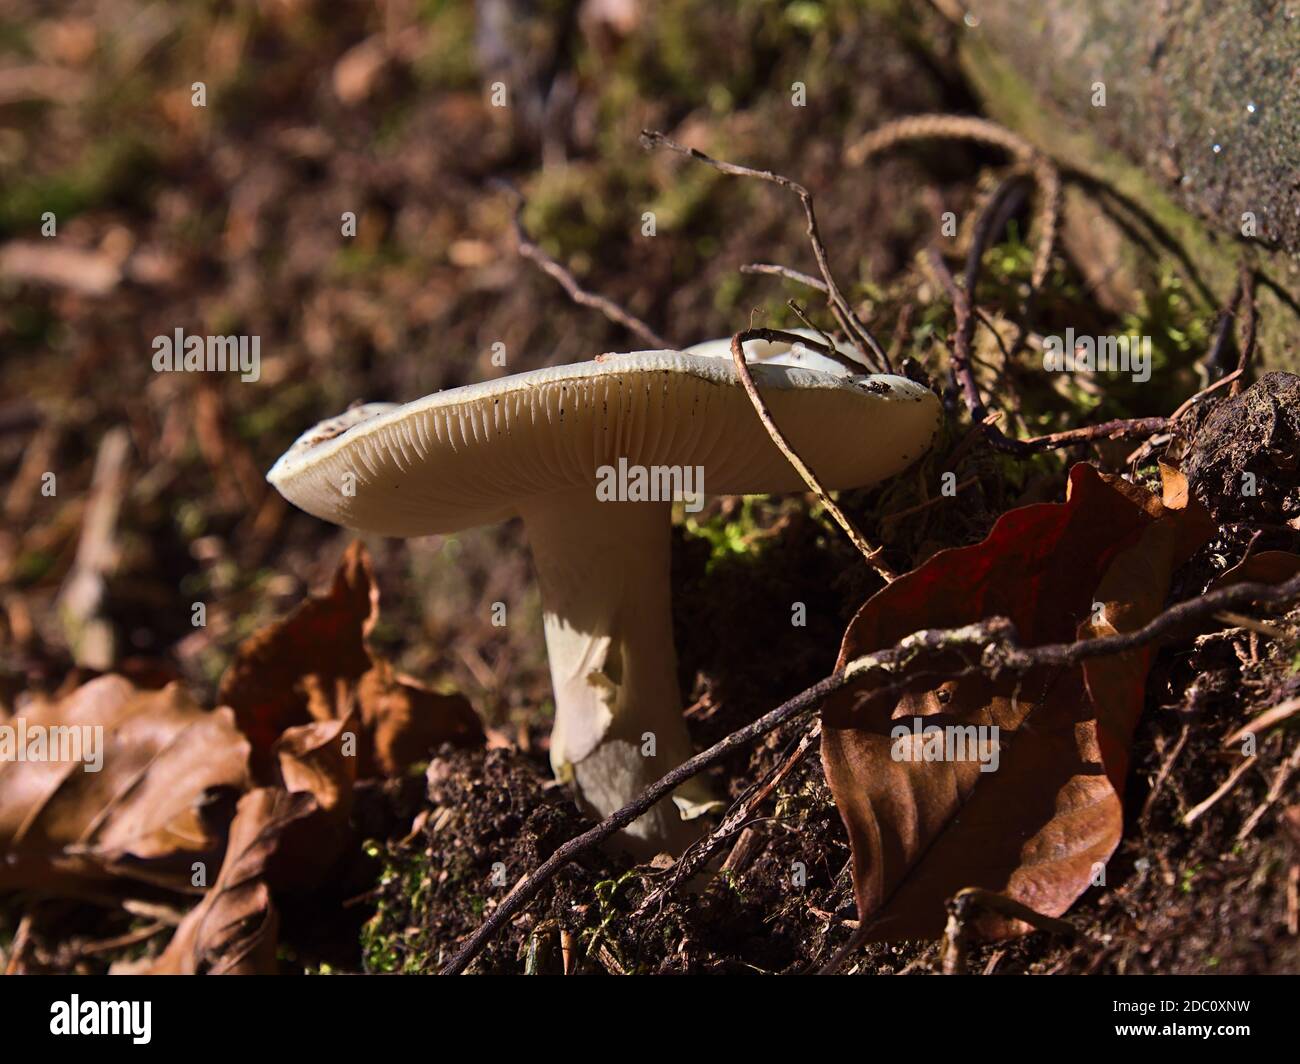 Macrofotografia di fungo bianco singolo che cresce a fianco di un sentiero escursionistico nella Foresta Nera, Germania nella stagione autunnale con griglia visibile. Foto Stock